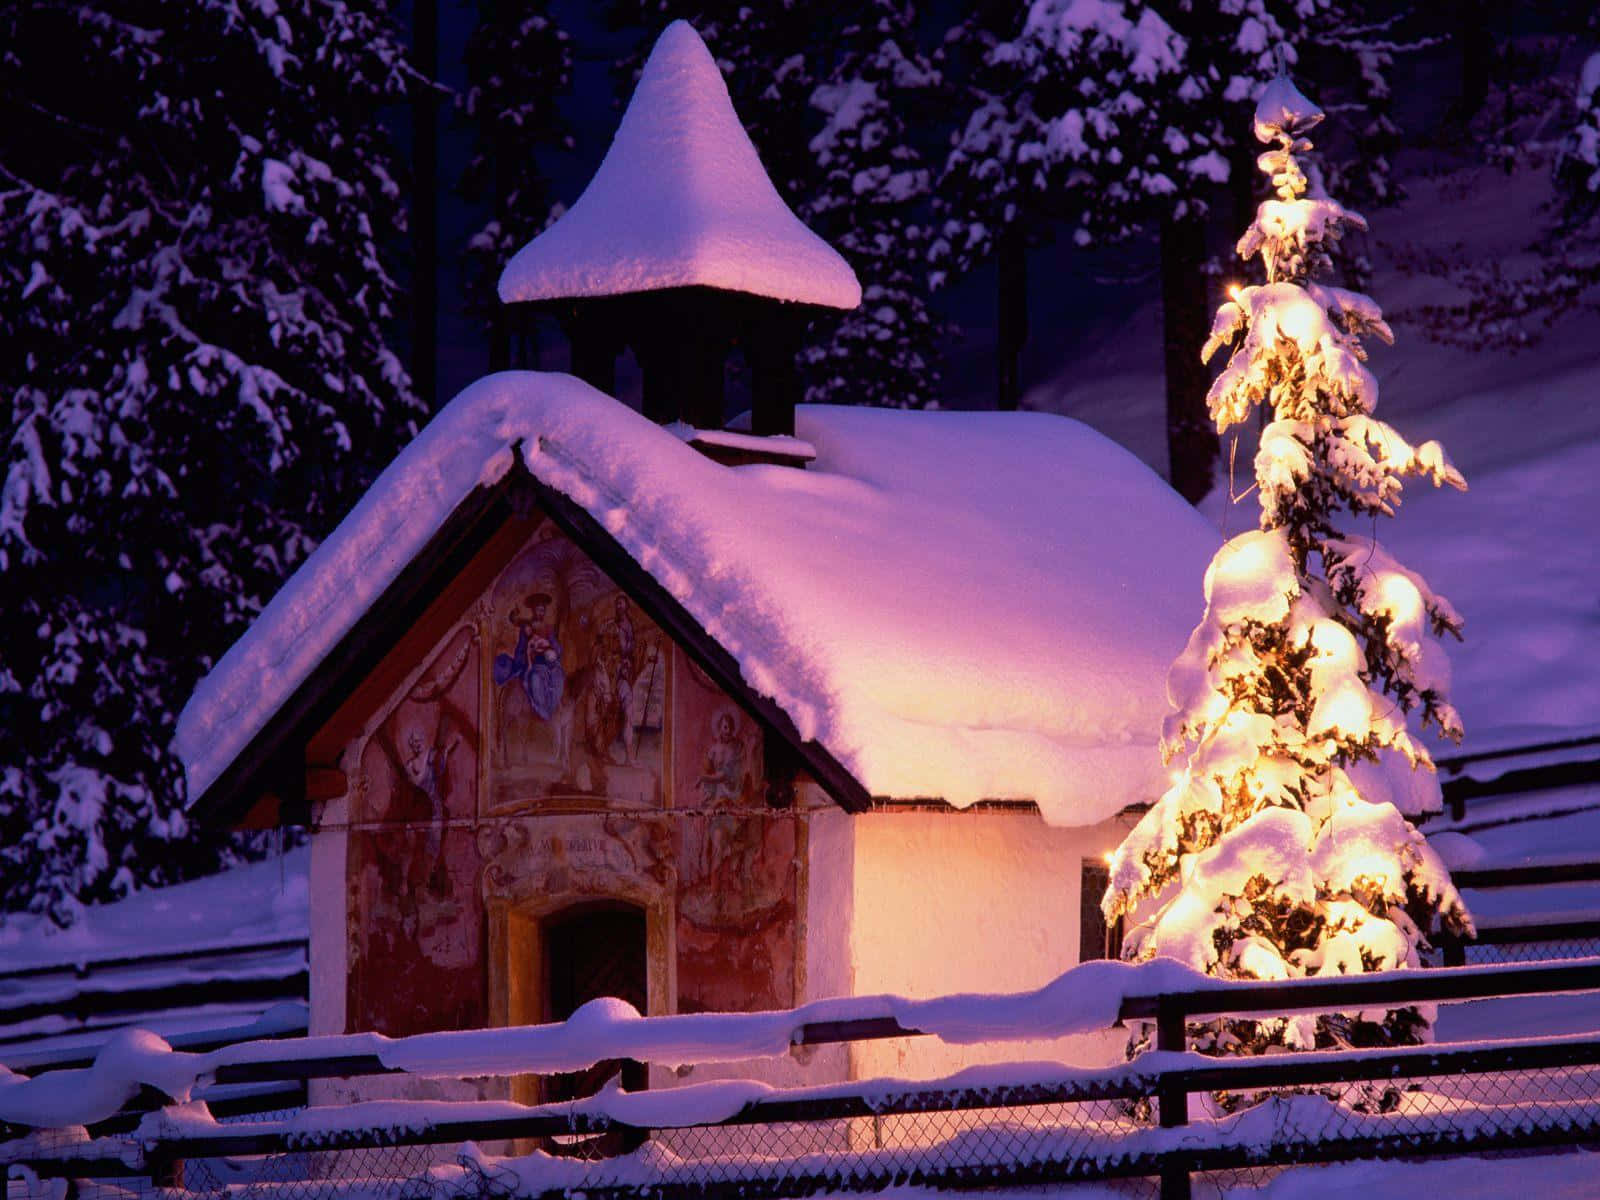 Celebrale Vacanze Con Un Natale Bianco E Nevoso!